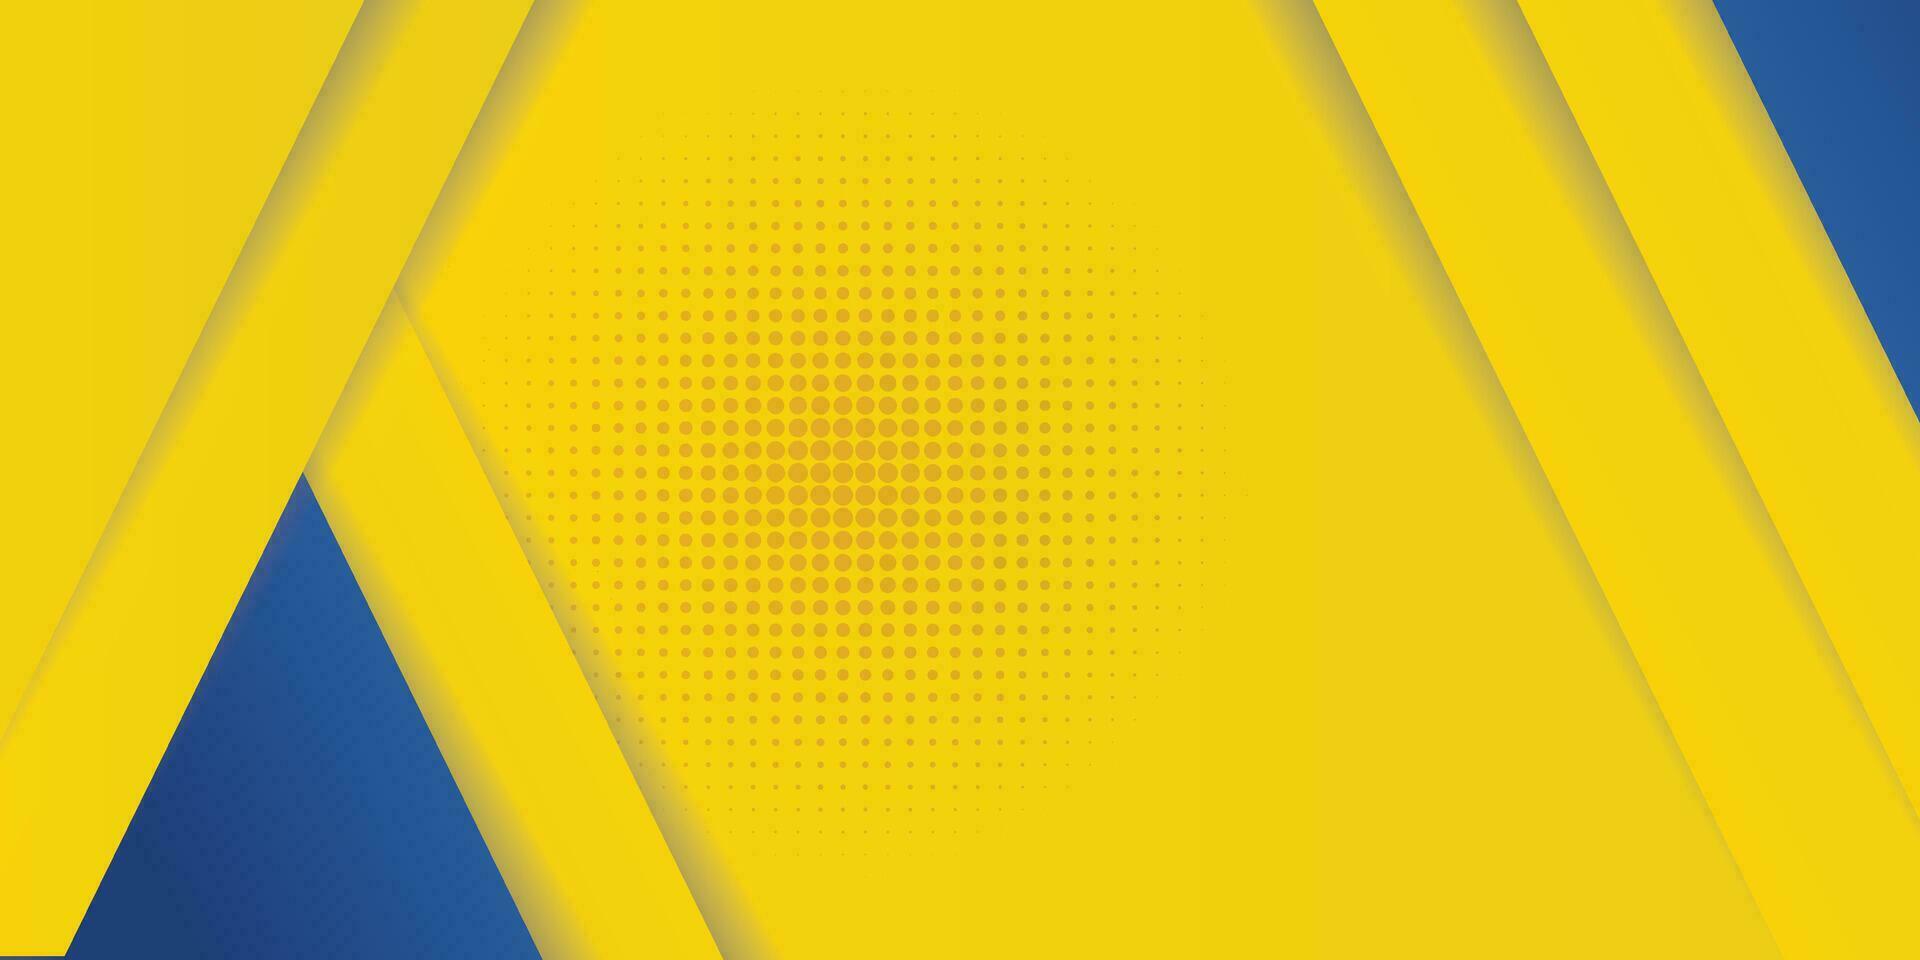 abstrakter hintergrund moderne hipster futuristische grafik. gelber Hintergrund mit Streifen. abstraktes Hintergrundtexturdesign des Vektors, helles Plakat, gelbe und blaue Hintergrundvektorillustration der Fahne. vektor